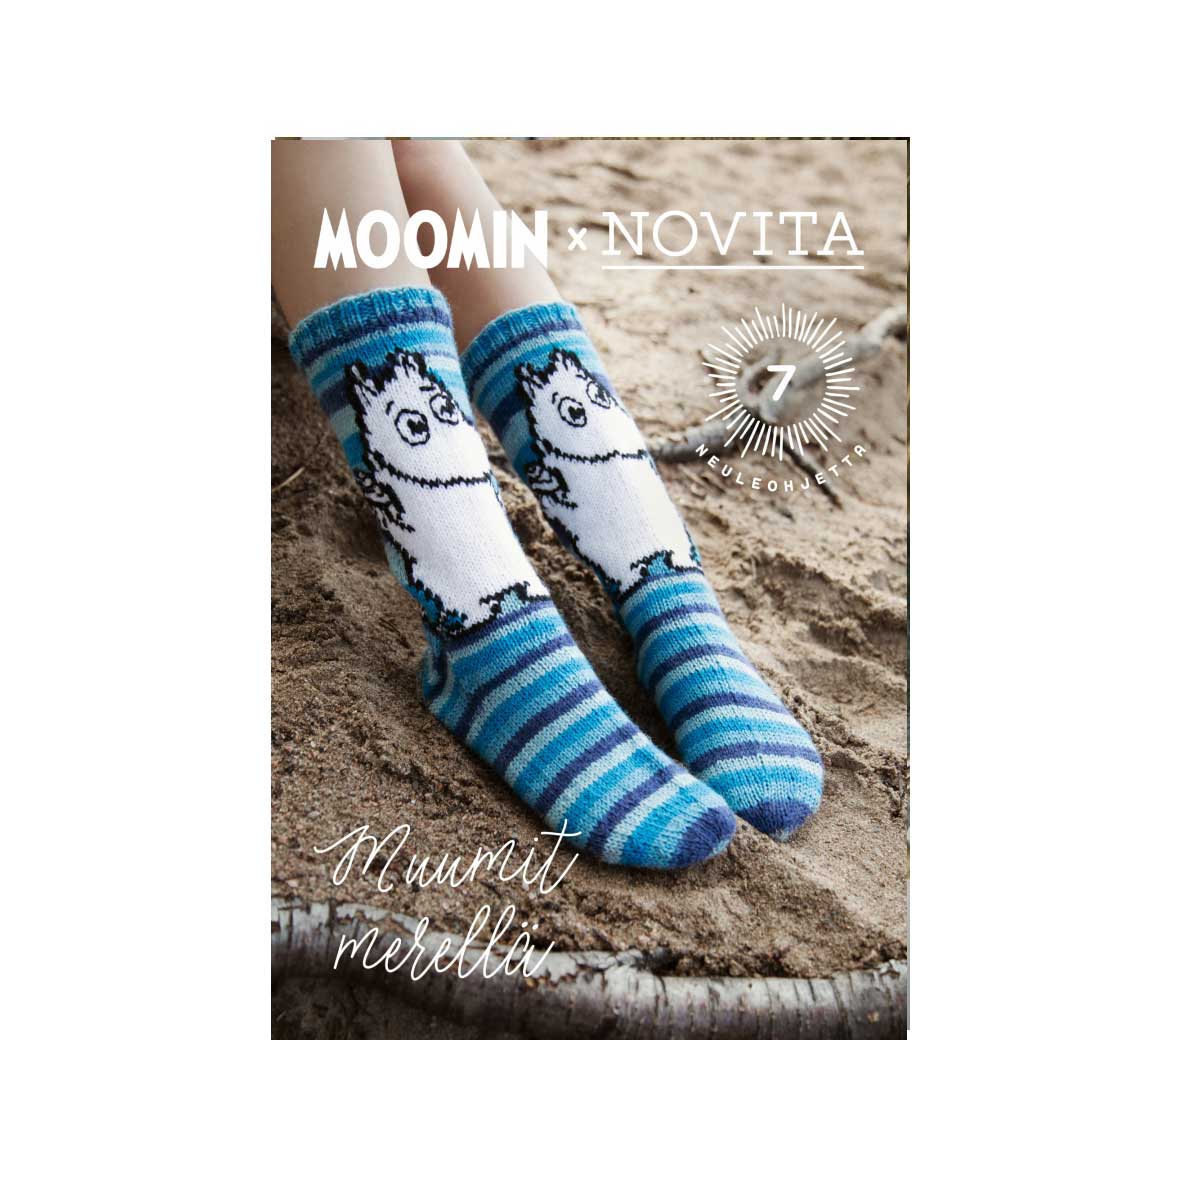 Ohjekirjasarja Moomin x Novita - Muumit Merellä, 2020